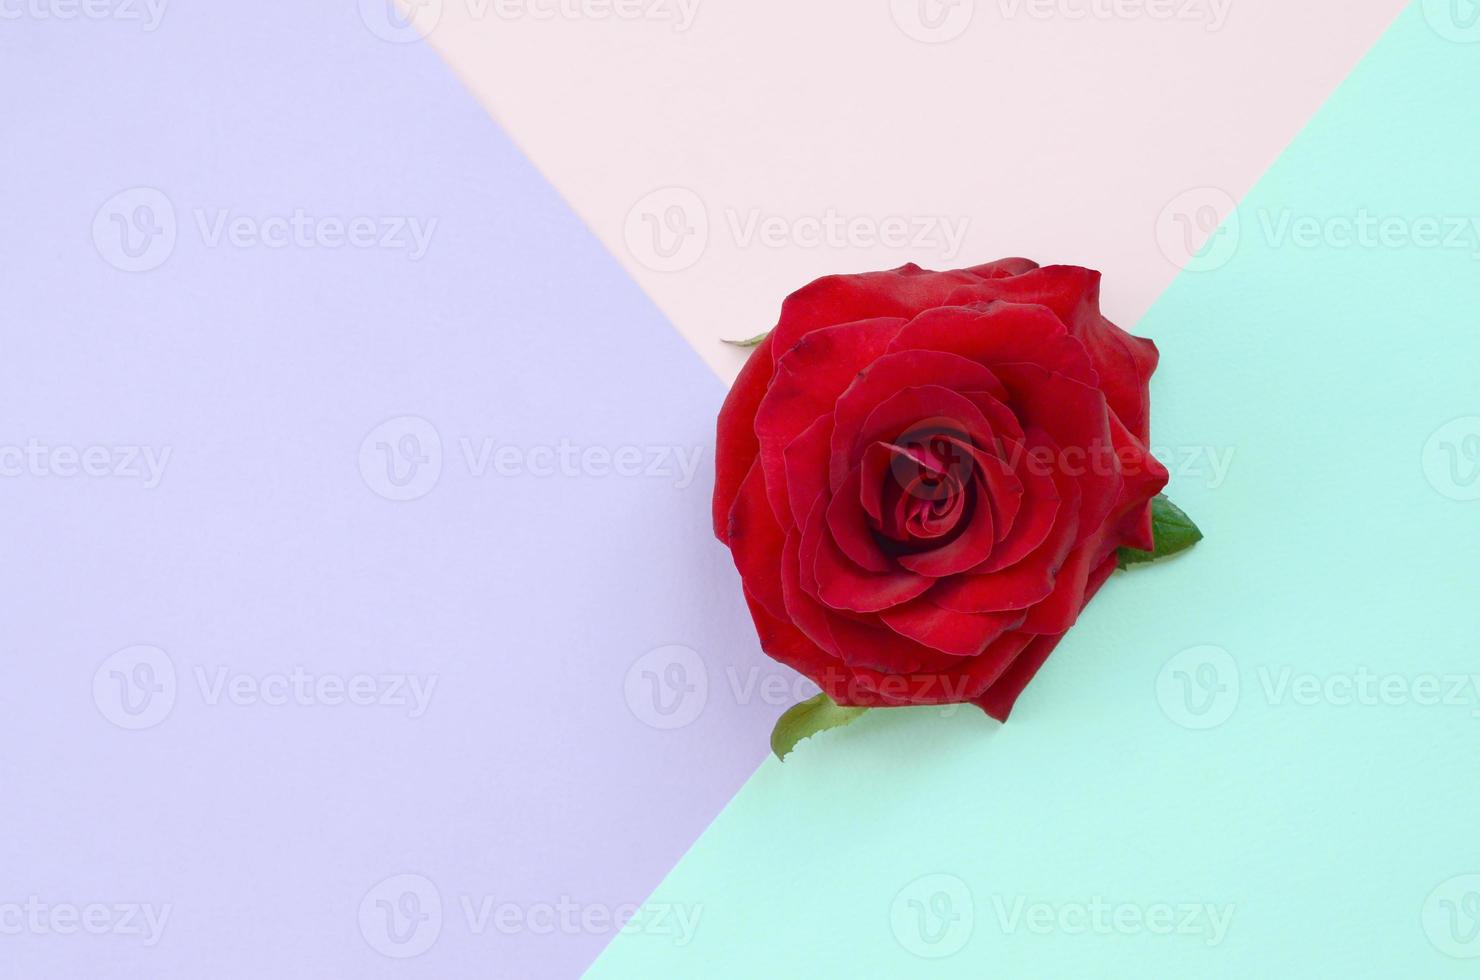 mörk röd reste sig blomma på pastell blå rosa och lila bakgrund topp se foto